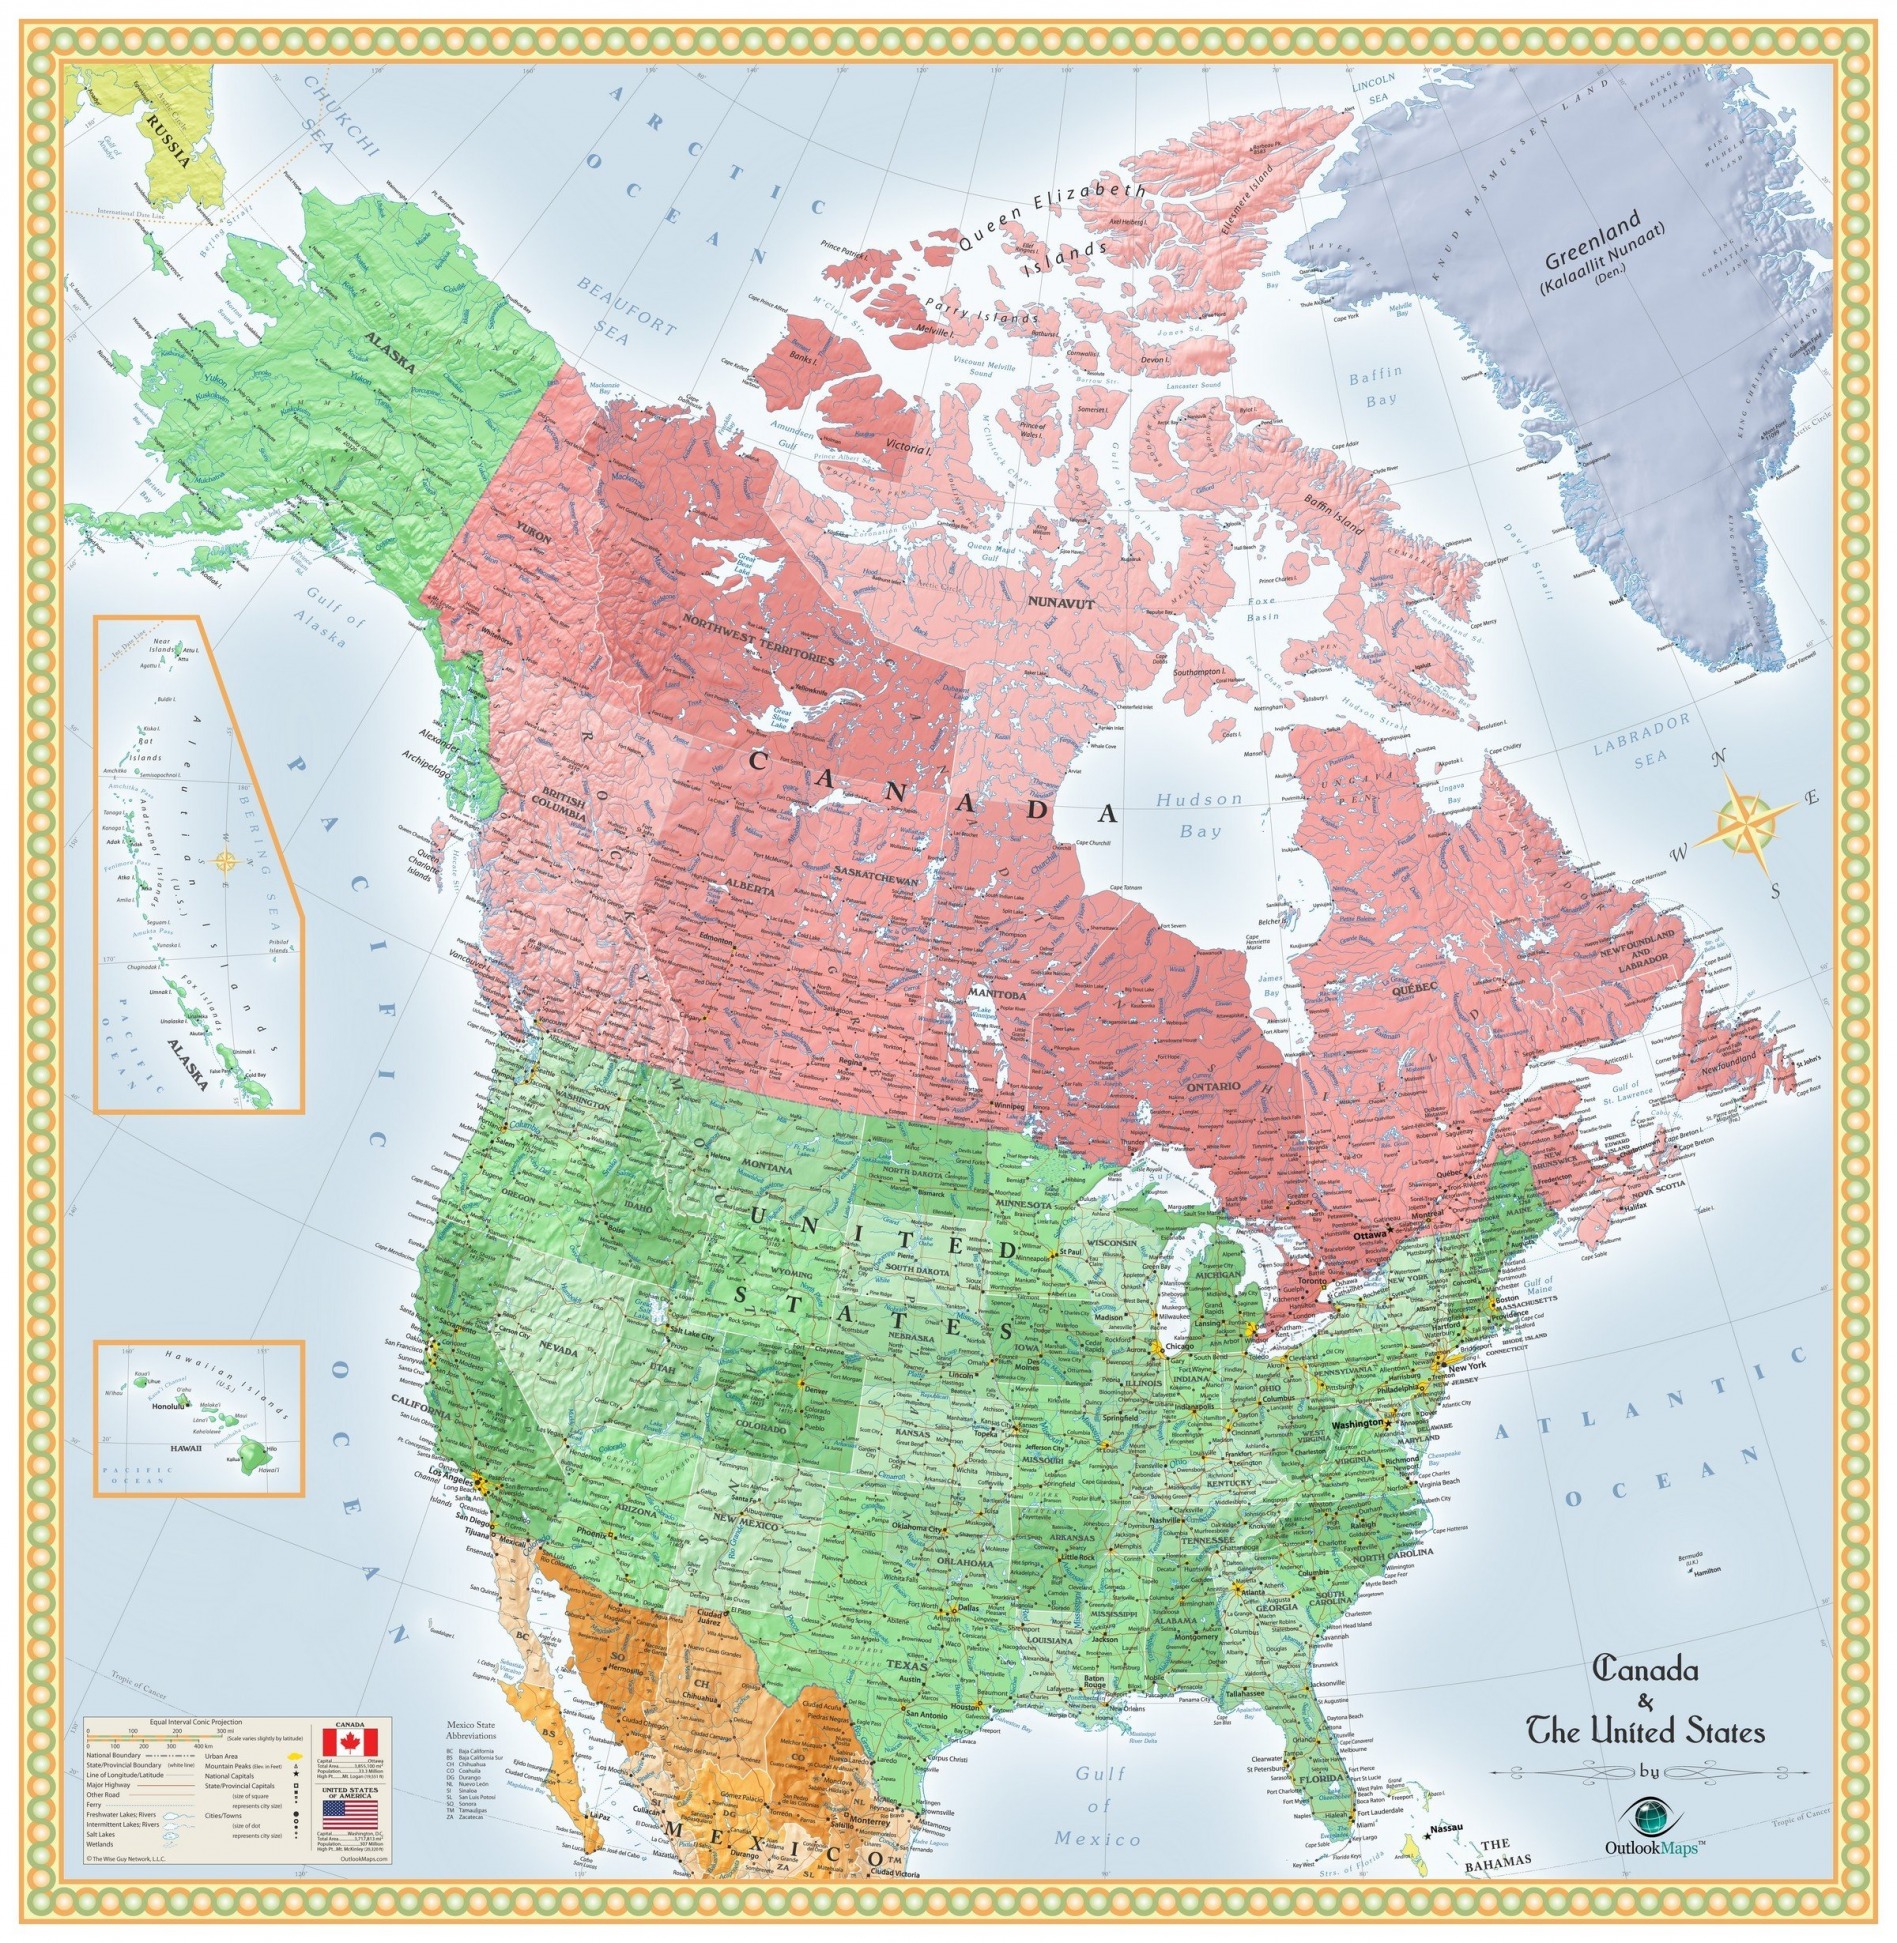 Канадский на карте северной америки. "Карта Северной Америки с Штатами Канады". Карта США И Канады со Штатами. Карат США И Канады. Политическая карта США И Канады.